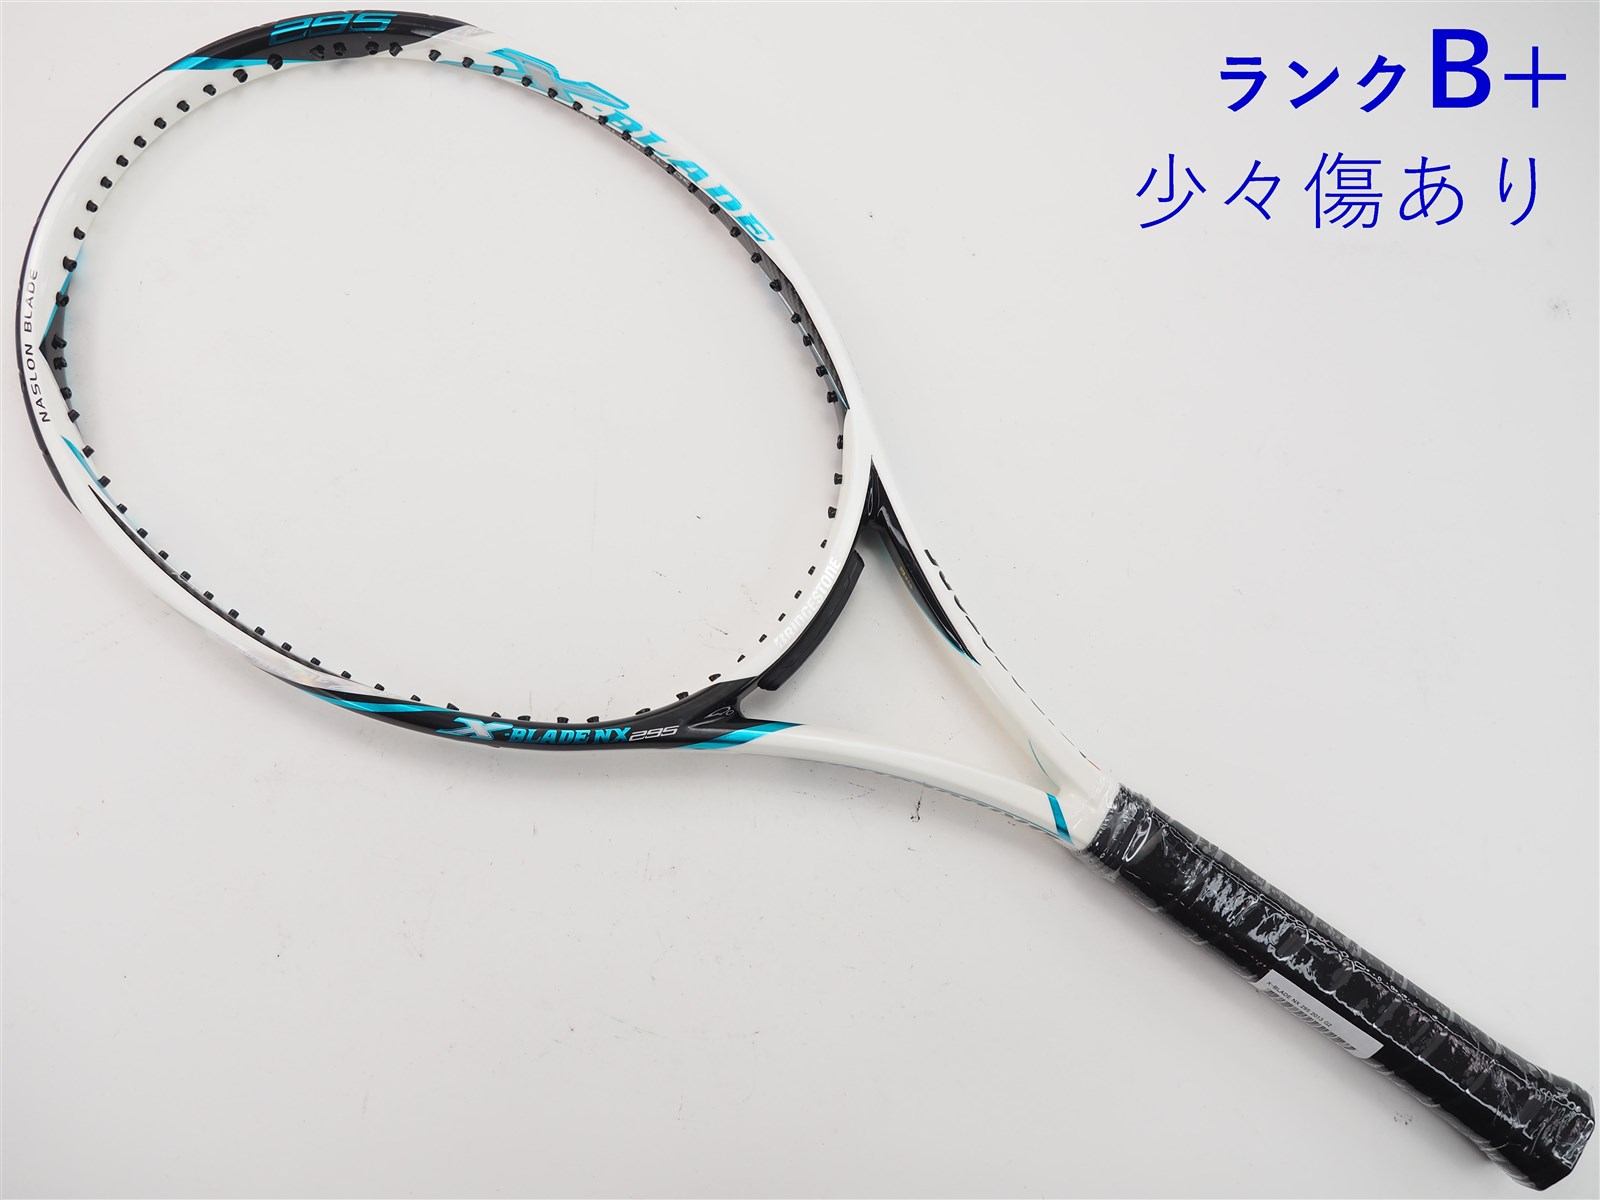 テニスラケット ブリヂストン エックスブレード ブイエックス 295 2015年モデル (G2)BRIDGESTONE X-BLADE VX 295 2015ガット無しグリップサイズ